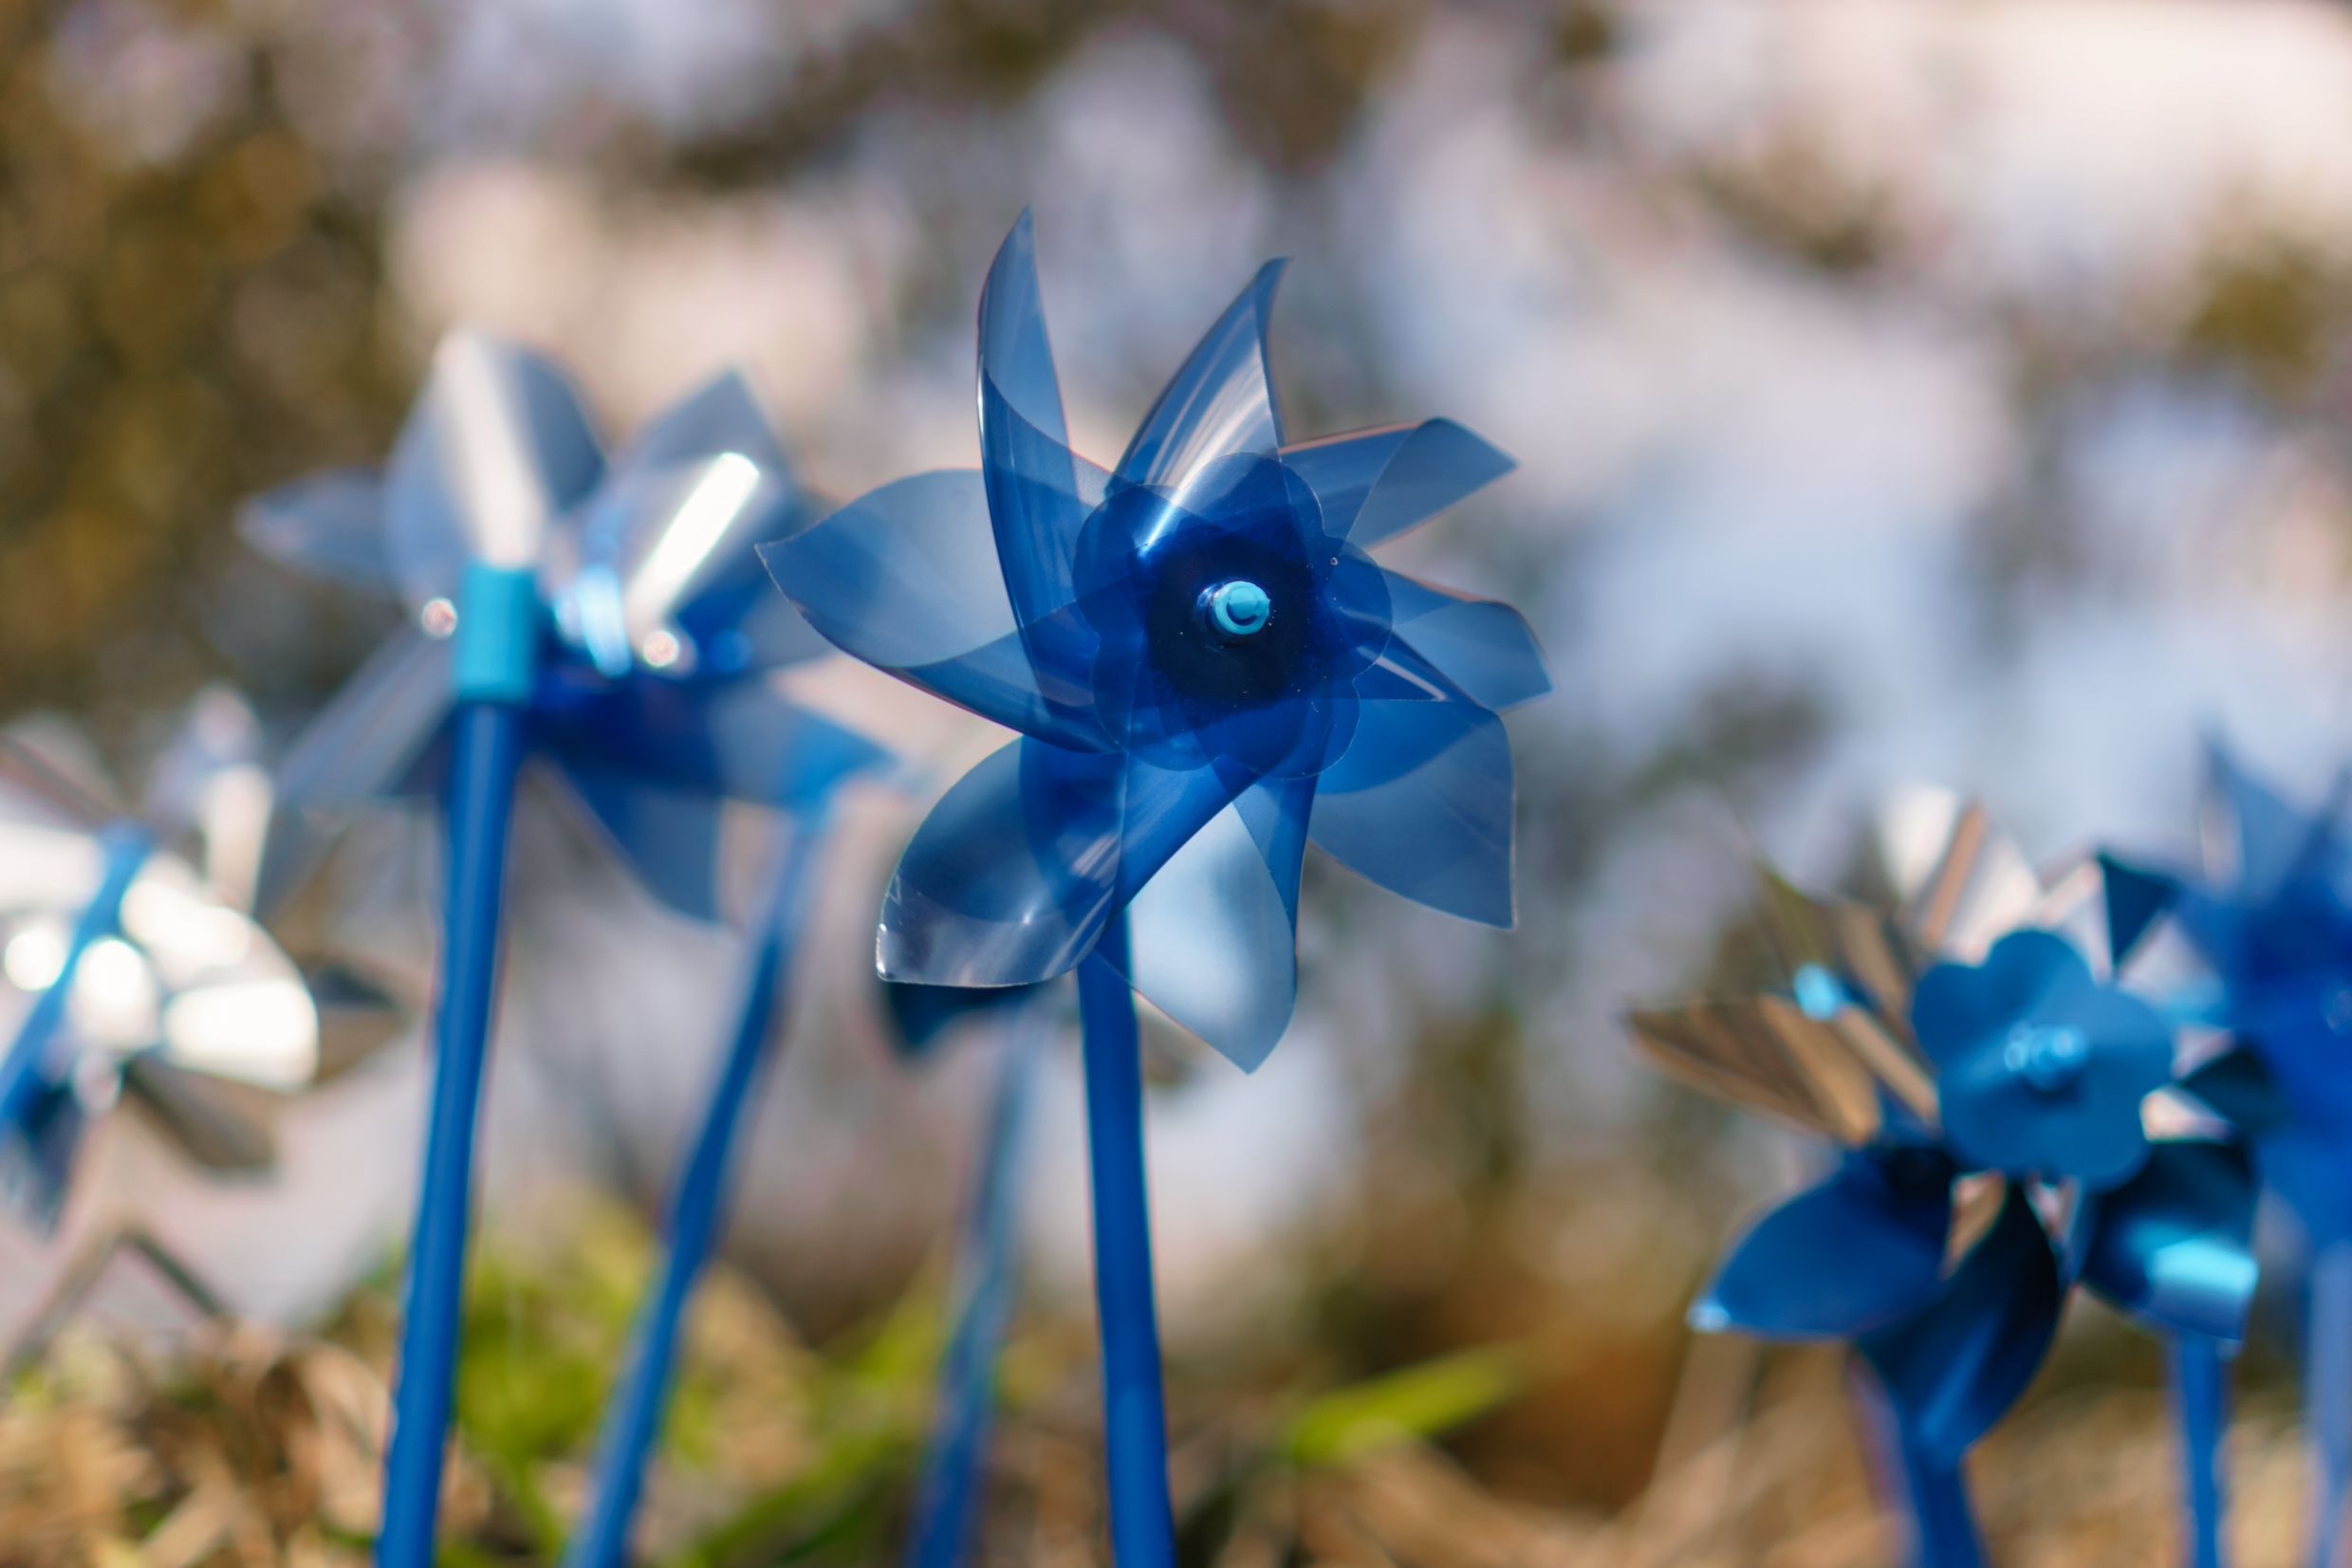 Close up of bright blue pinwheels